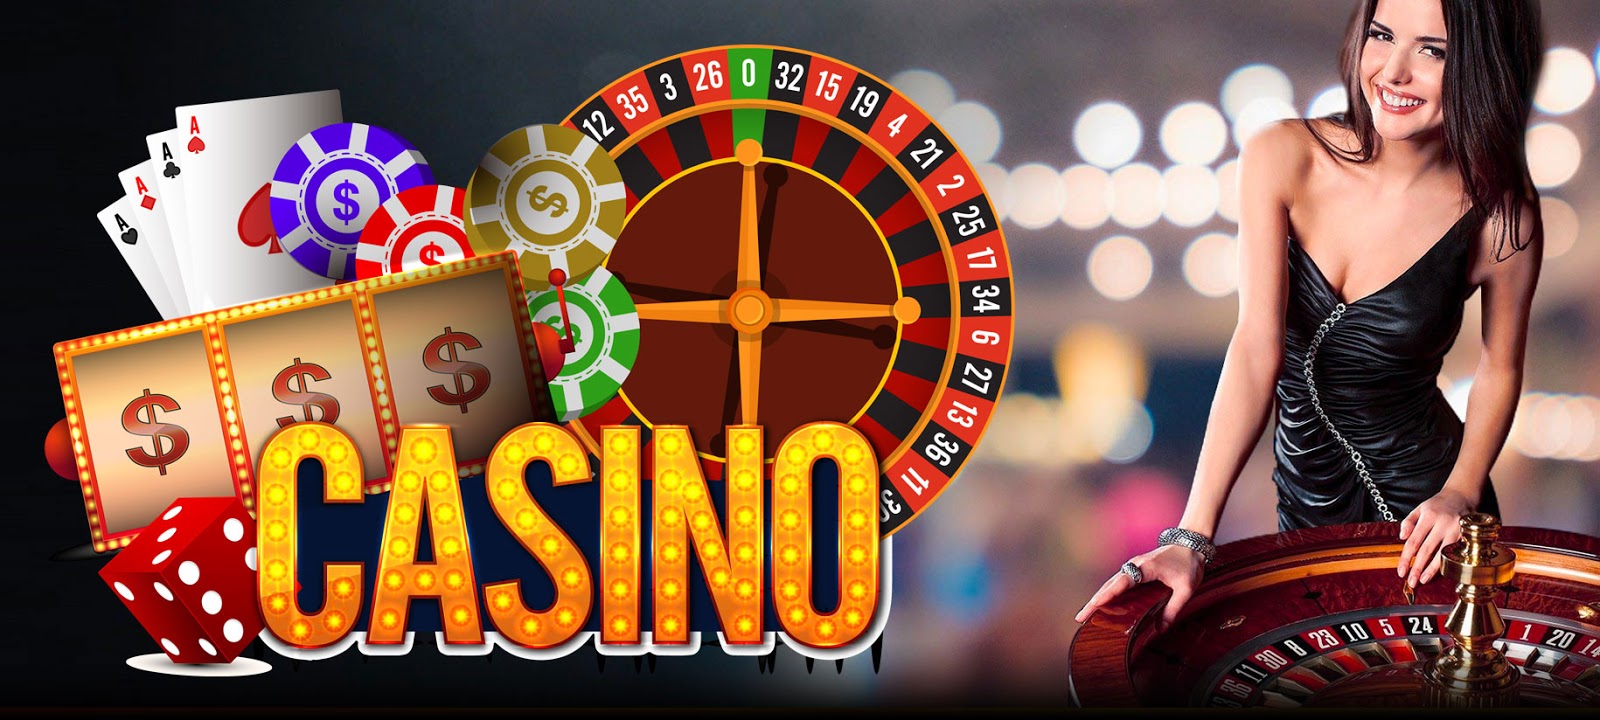 Advantages of online casino виртуальное казино фортуной